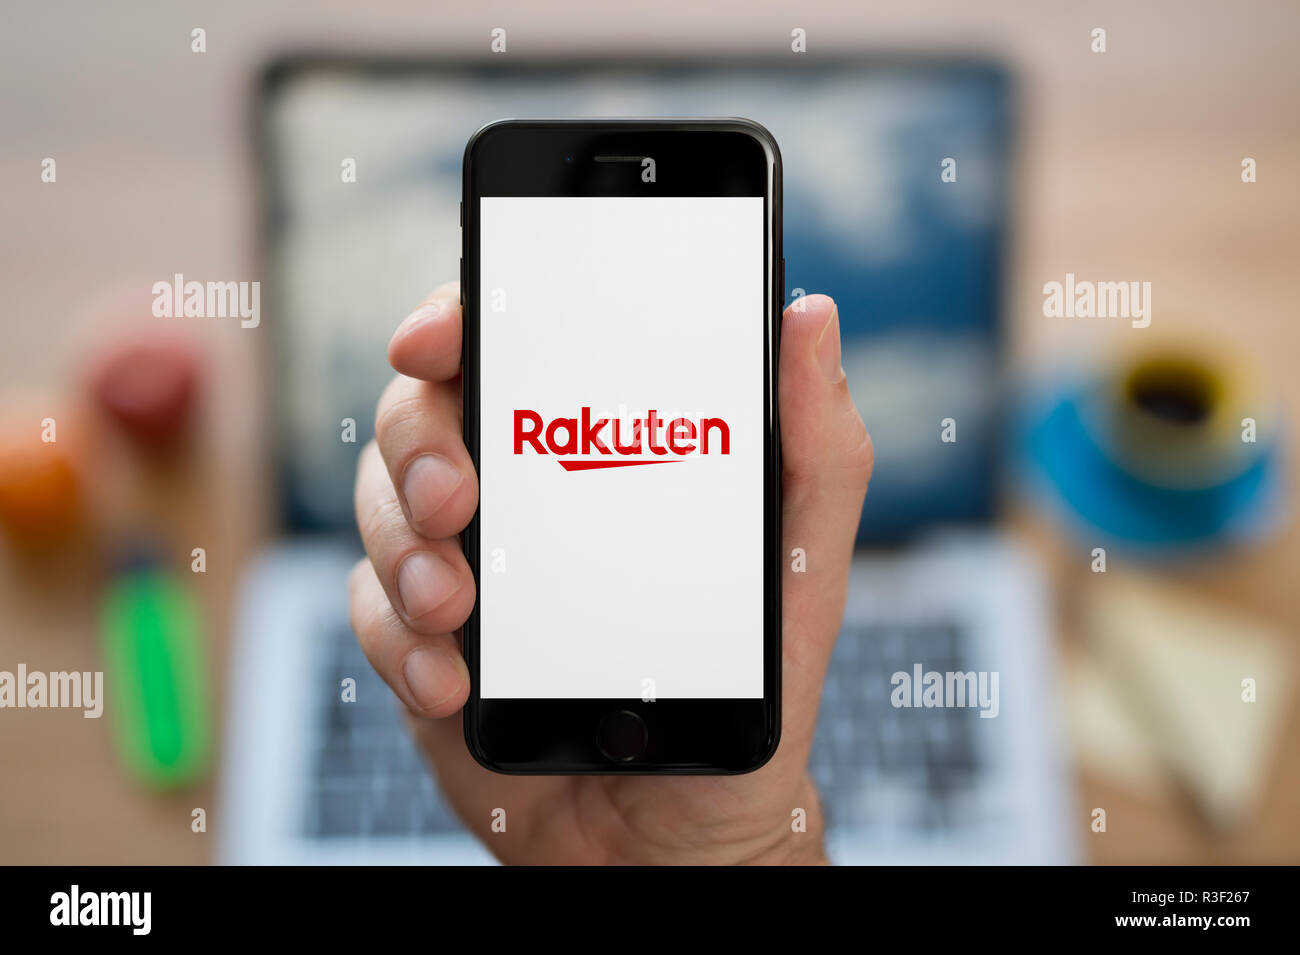 Un uomo guarda al suo iPhone che visualizza il logo Rakuten, mentre se ne sta seduto alla sua scrivania per computer (solo uso editoriale). Foto Stock